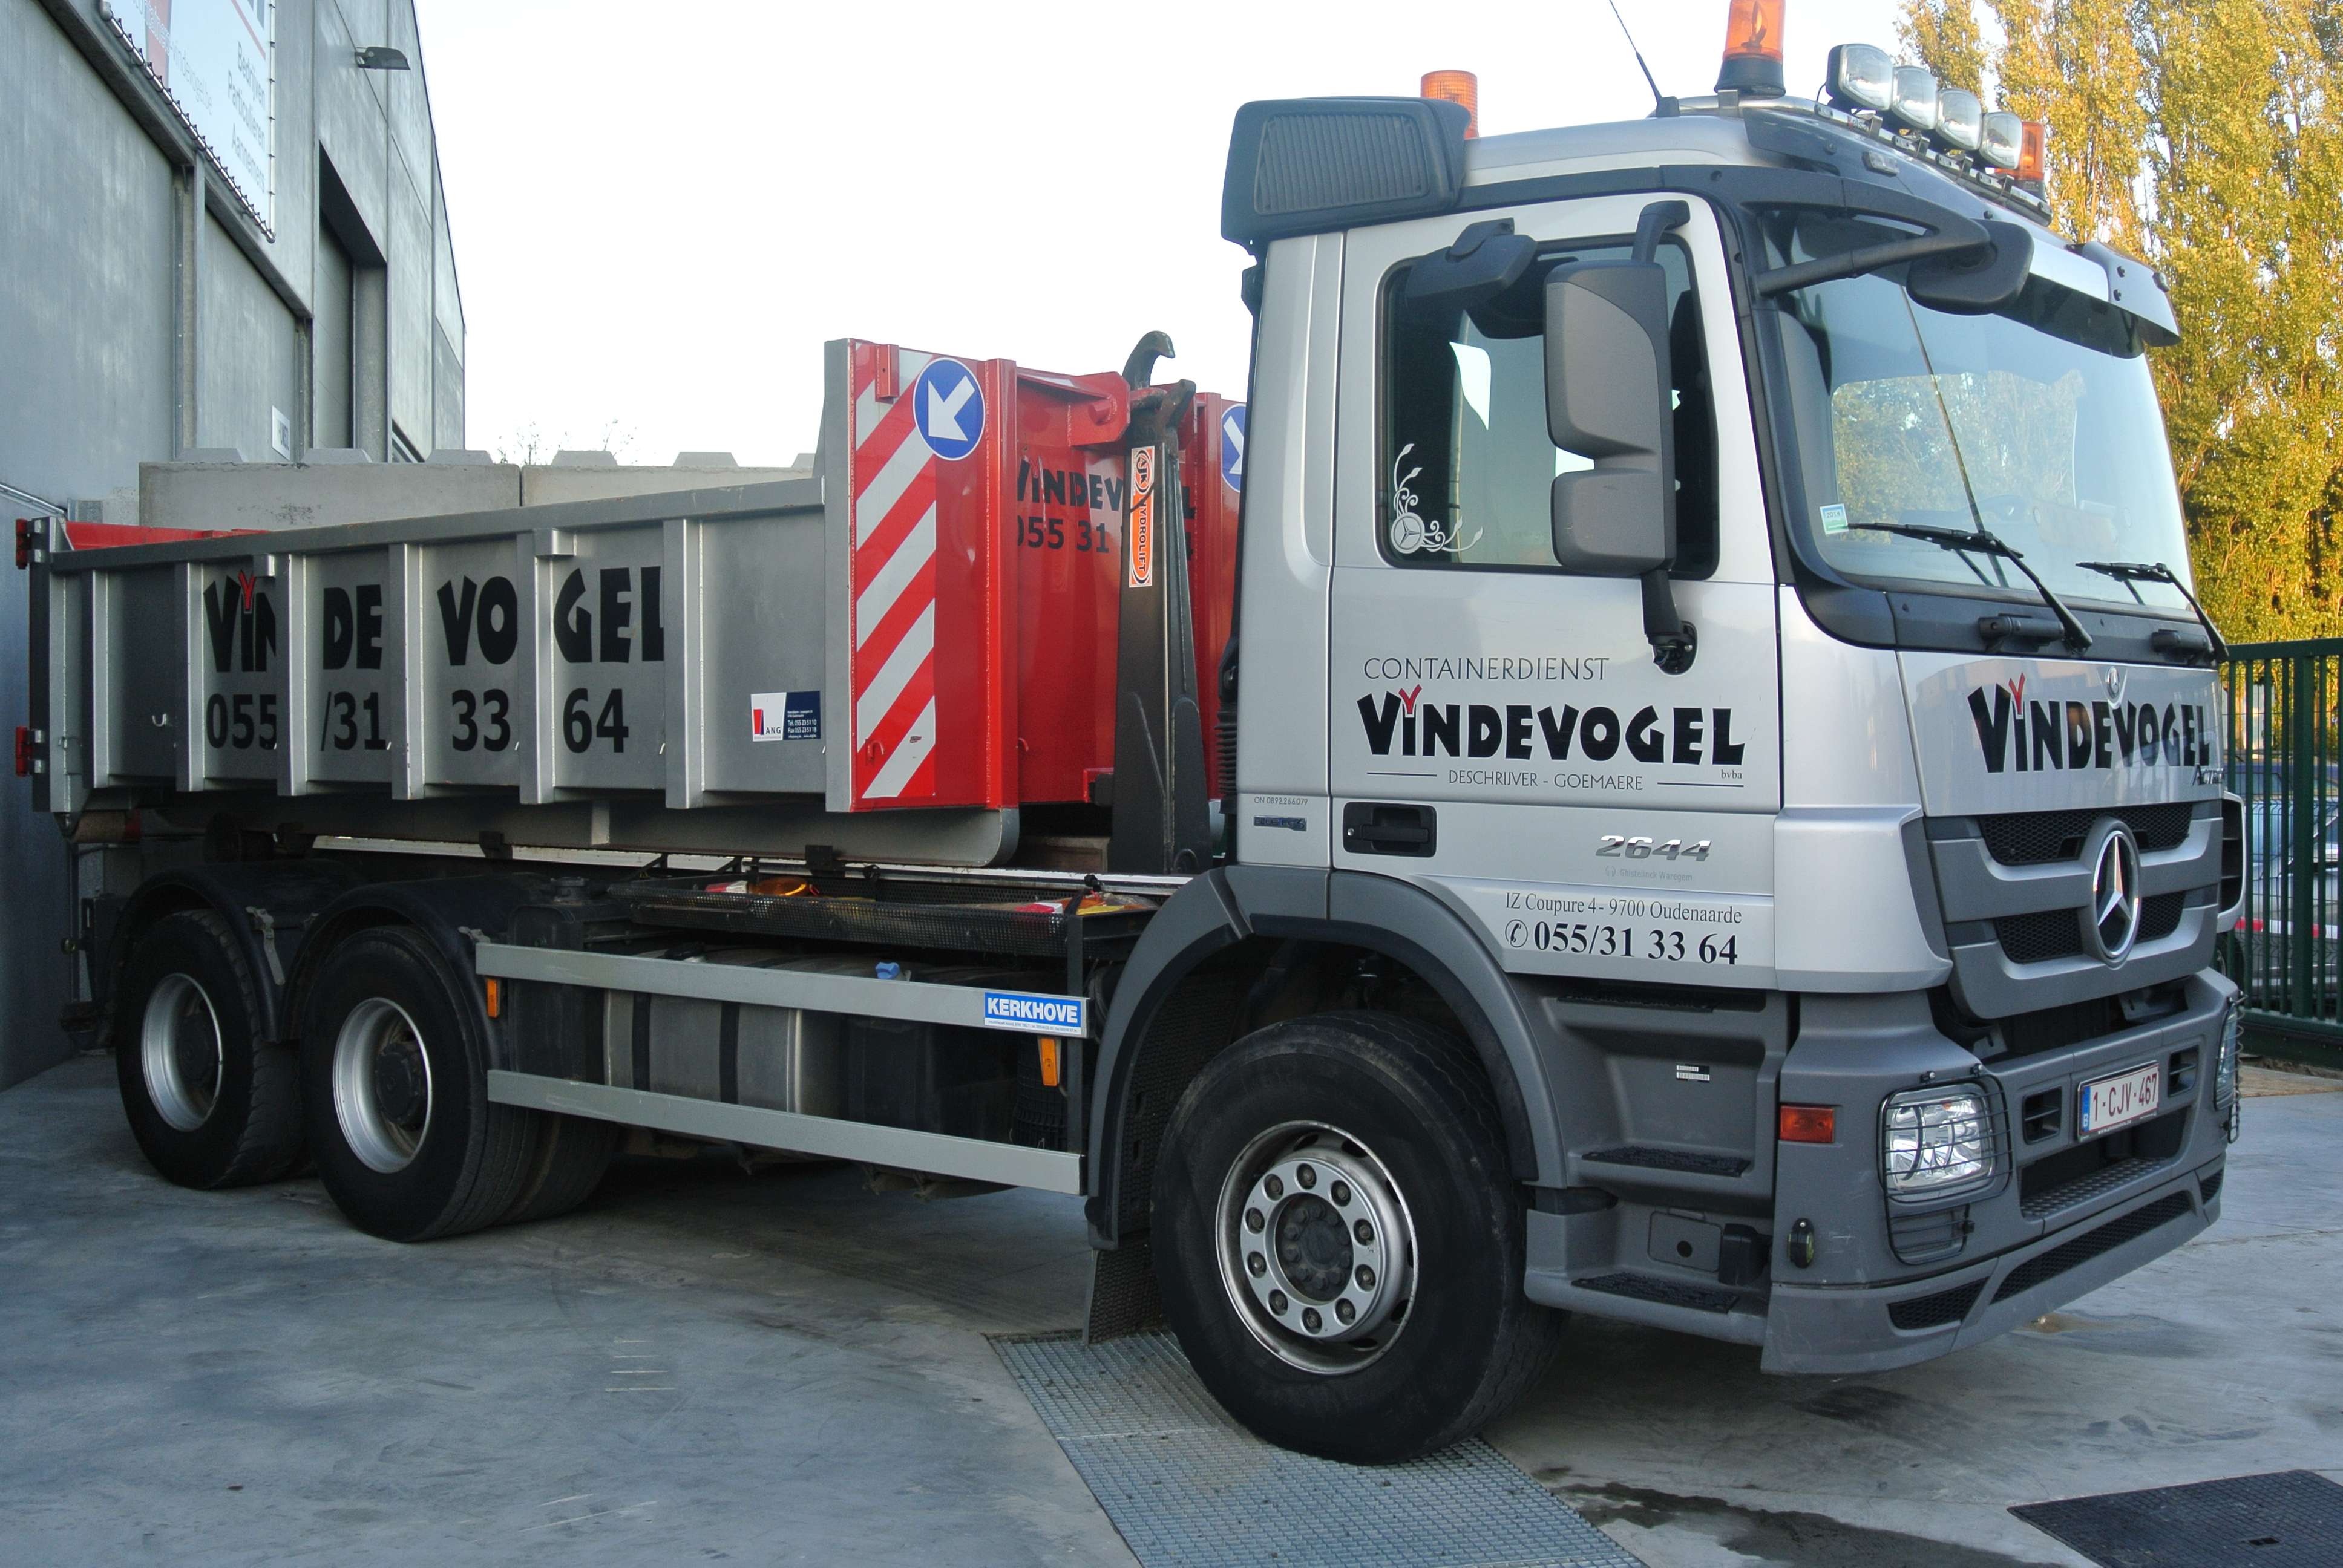 afvalcontainerverhuurders Gent Containerdienst Vindevogel BV